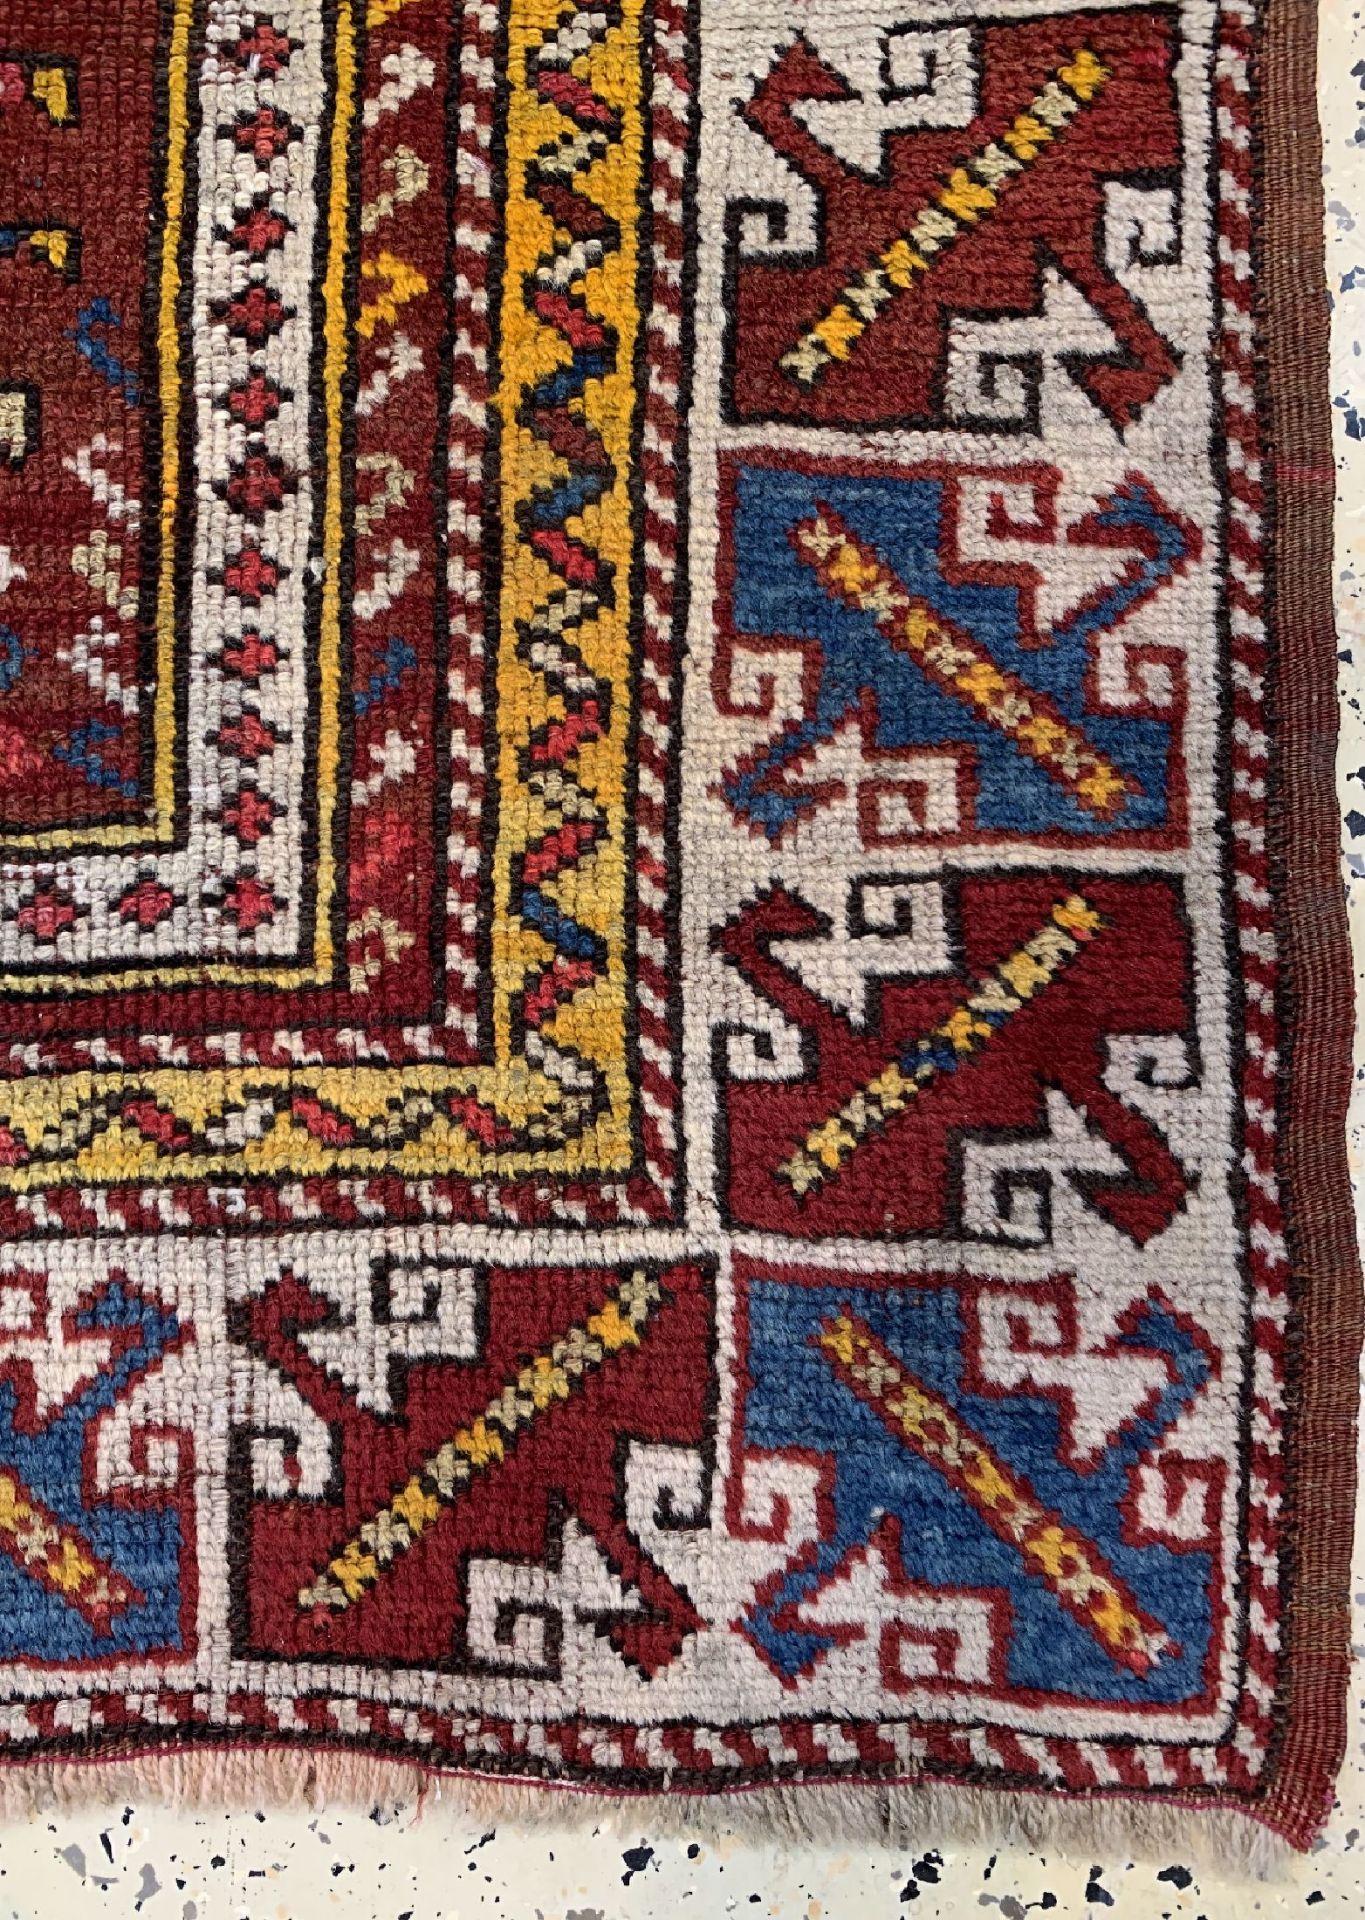 Ce magnifique tapis de niche provient d'Avunya, au nord-ouest de l'Anatolie, dans la province de Bergama. Il présente les caractéristiques typiques de ces tapis rares. L'équilibre harmonieux du dessin, la niche de prière d'un rouge profond et la